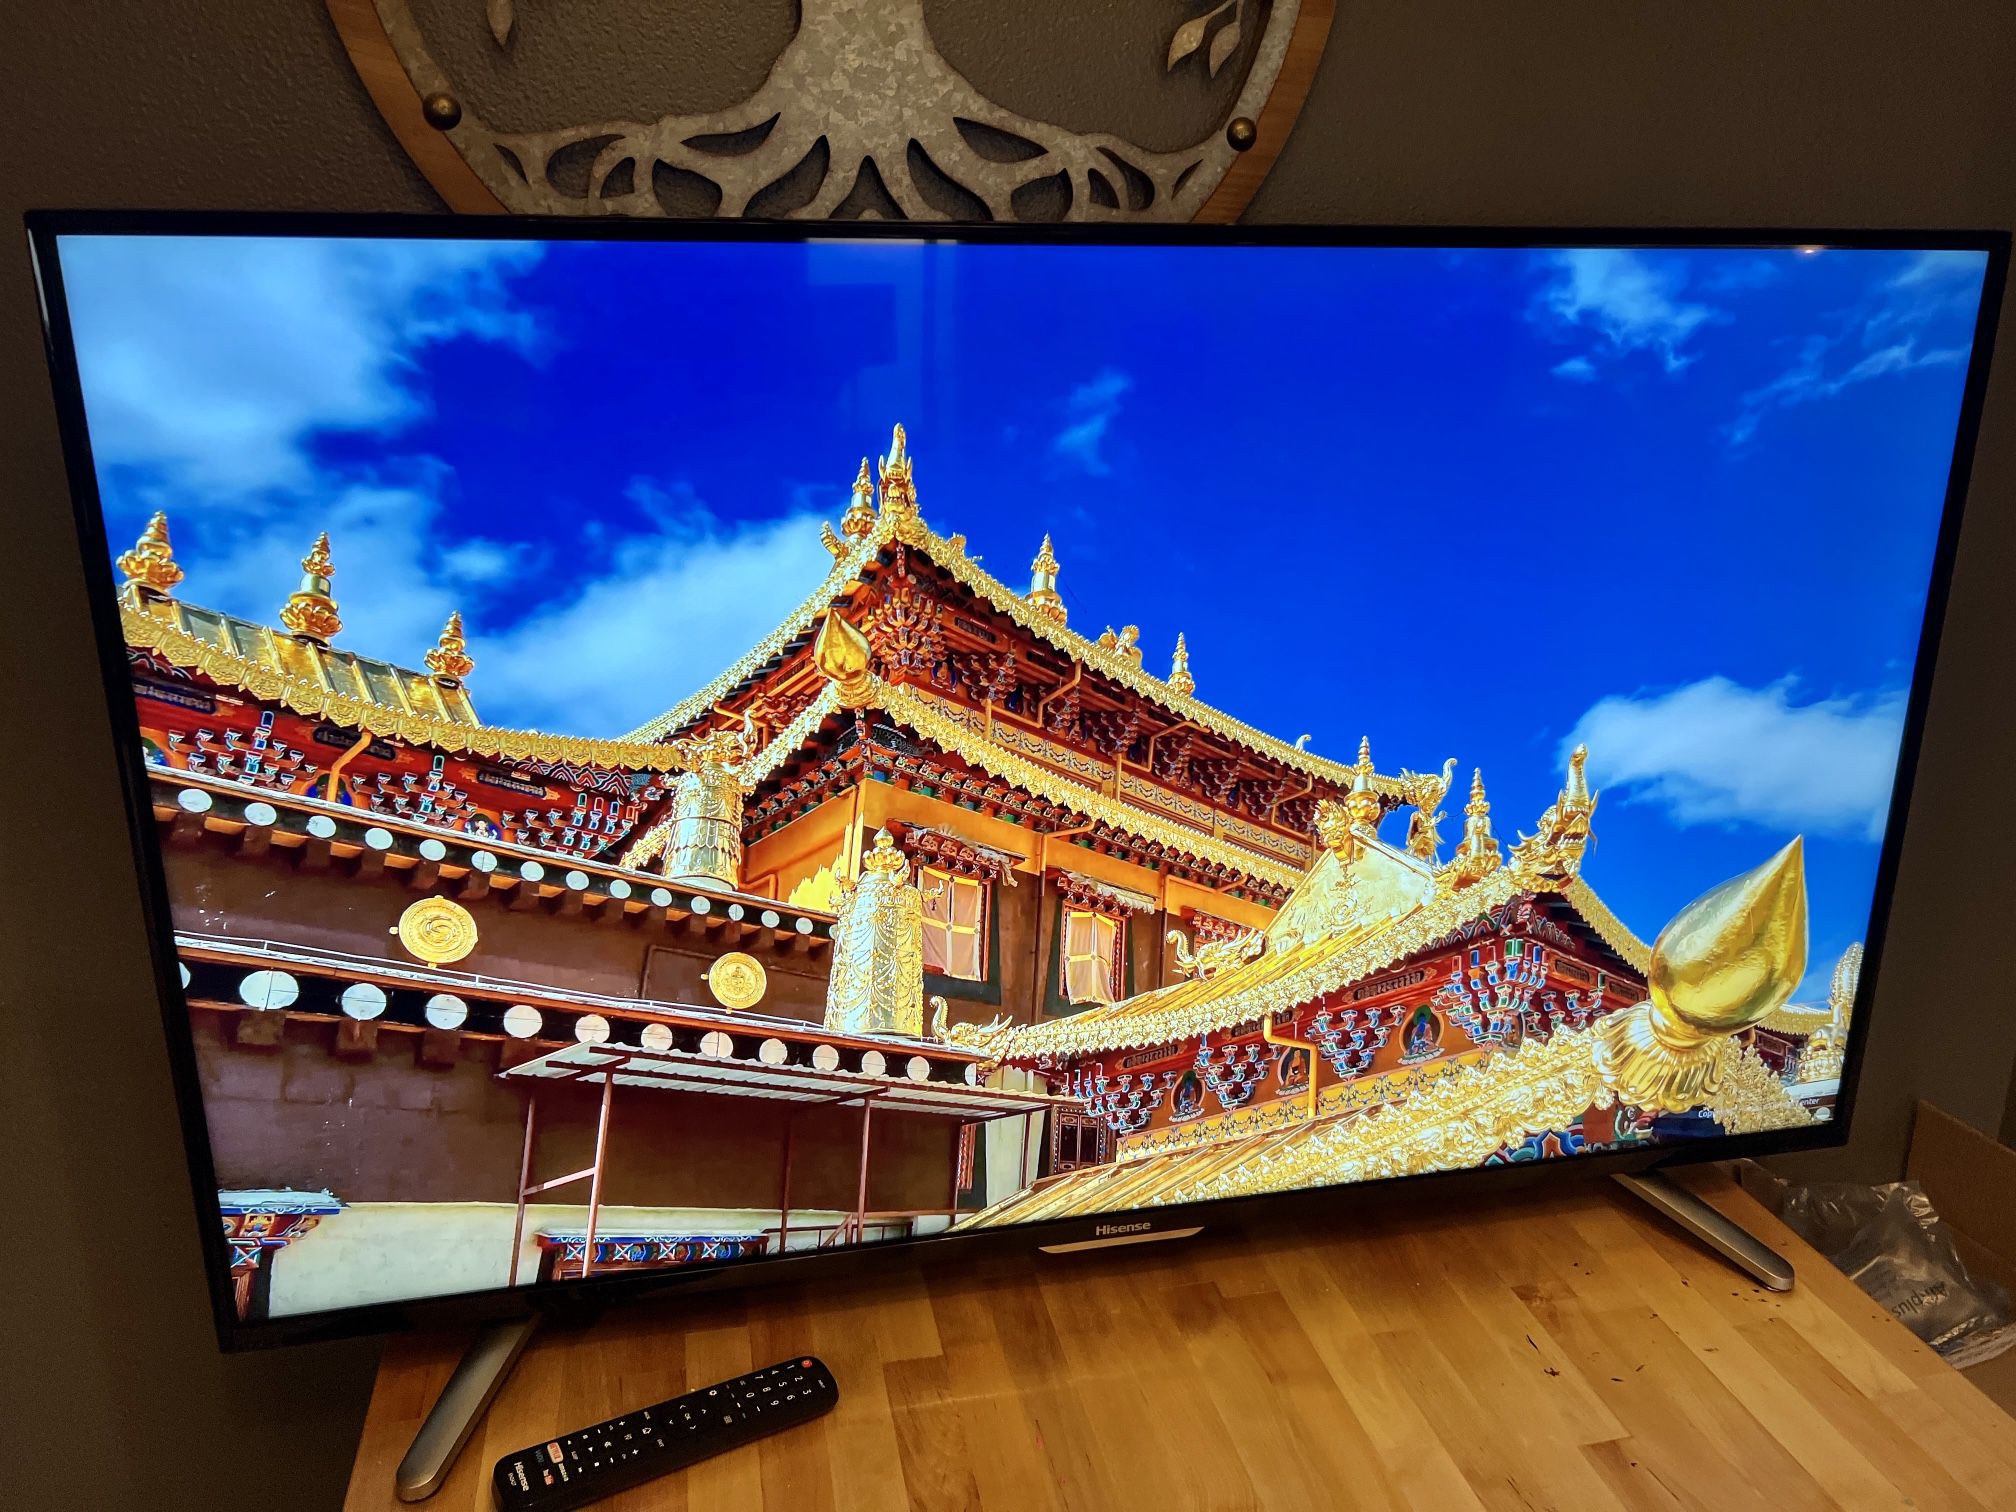 Hisense 50” 4K Smart TV